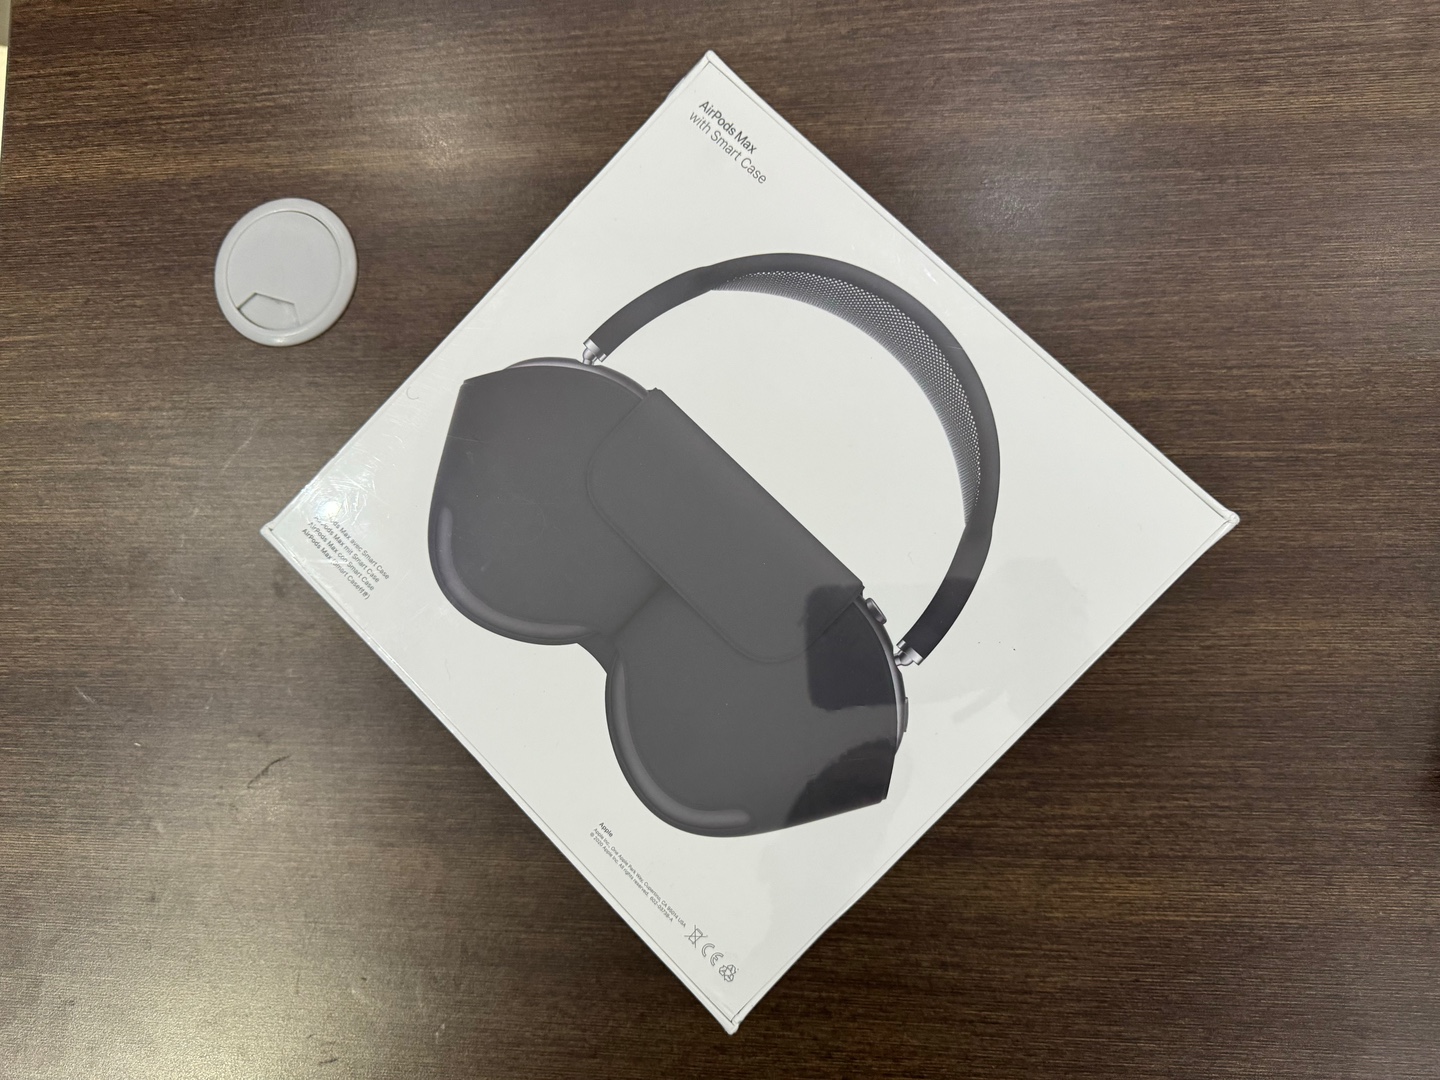 camaras y audio - AirPods Max Nuevos Sellados by Apple, Color: Space Gray, Originales, RD$ 29,500  1